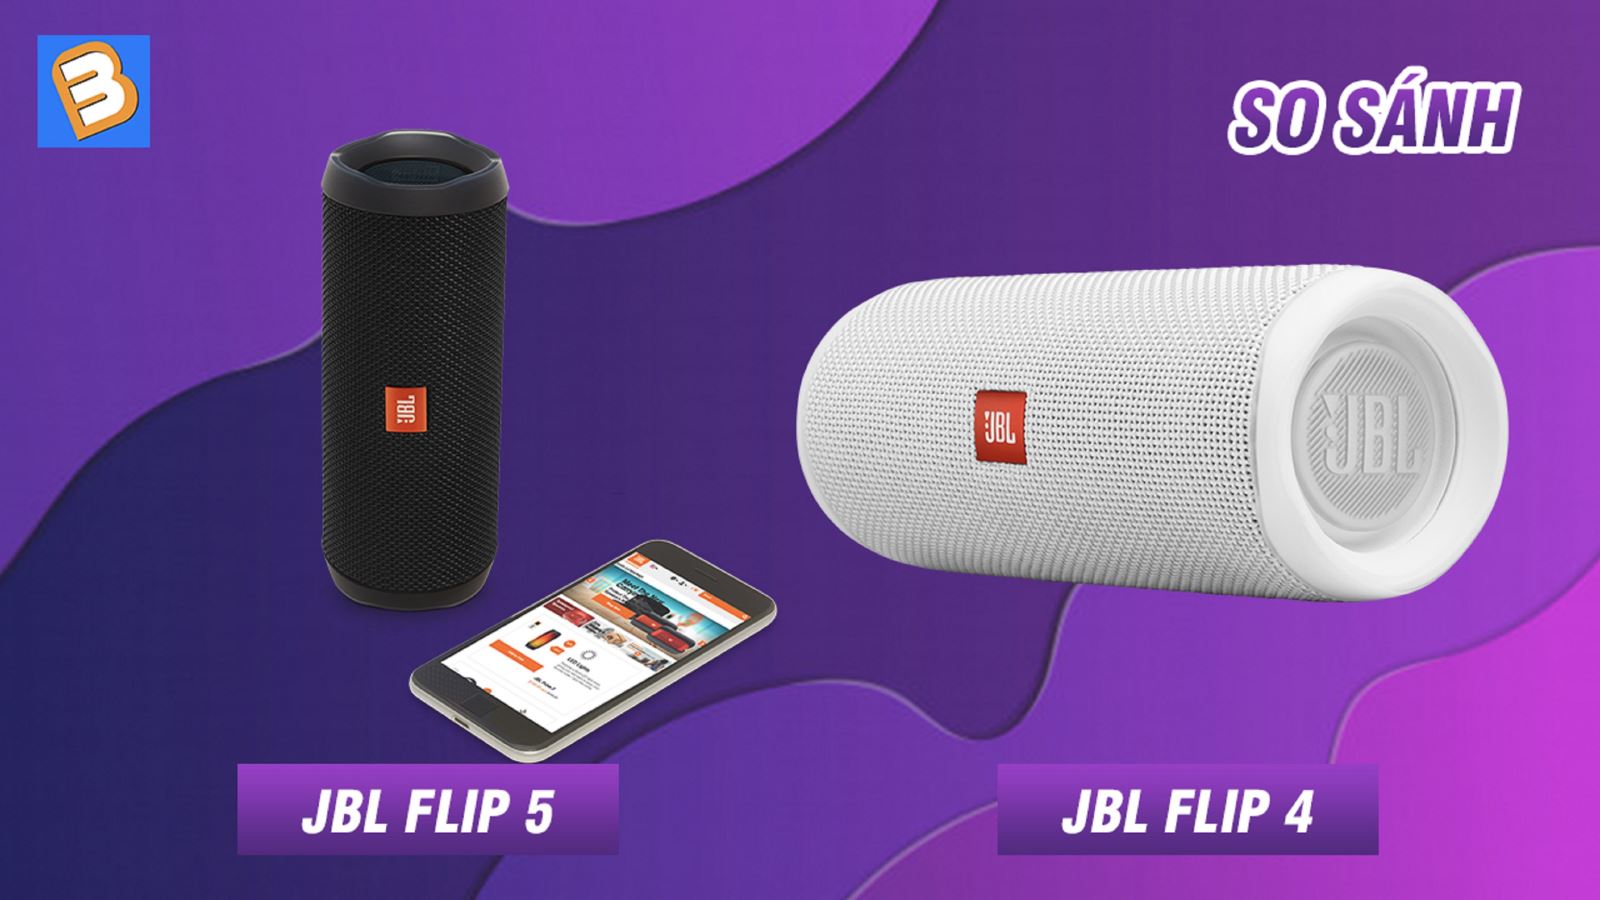 So sánh hai mẫu loa siêu hot của JBL: Flip 5 và Flip 4